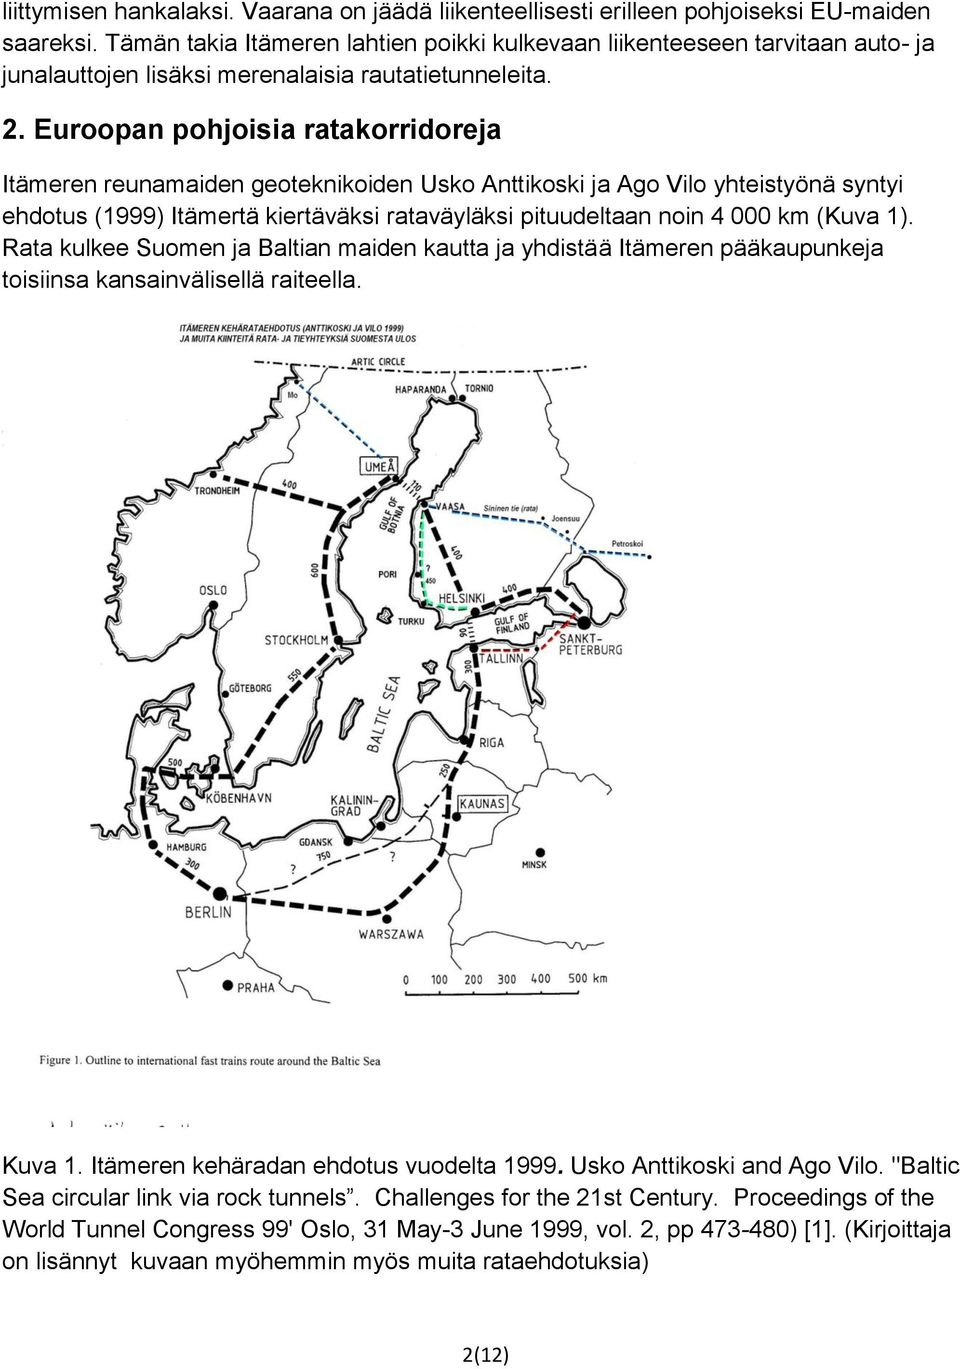 Euroopan pohjoisia ratakorridoreja Itämeren reunamaiden geoteknikoiden Usko Anttikoski ja Ago Vilo yhteistyönä syntyi ehdotus (1999) Itämertä kiertäväksi rataväyläksi pituudeltaan noin 4 000 km (Kuva